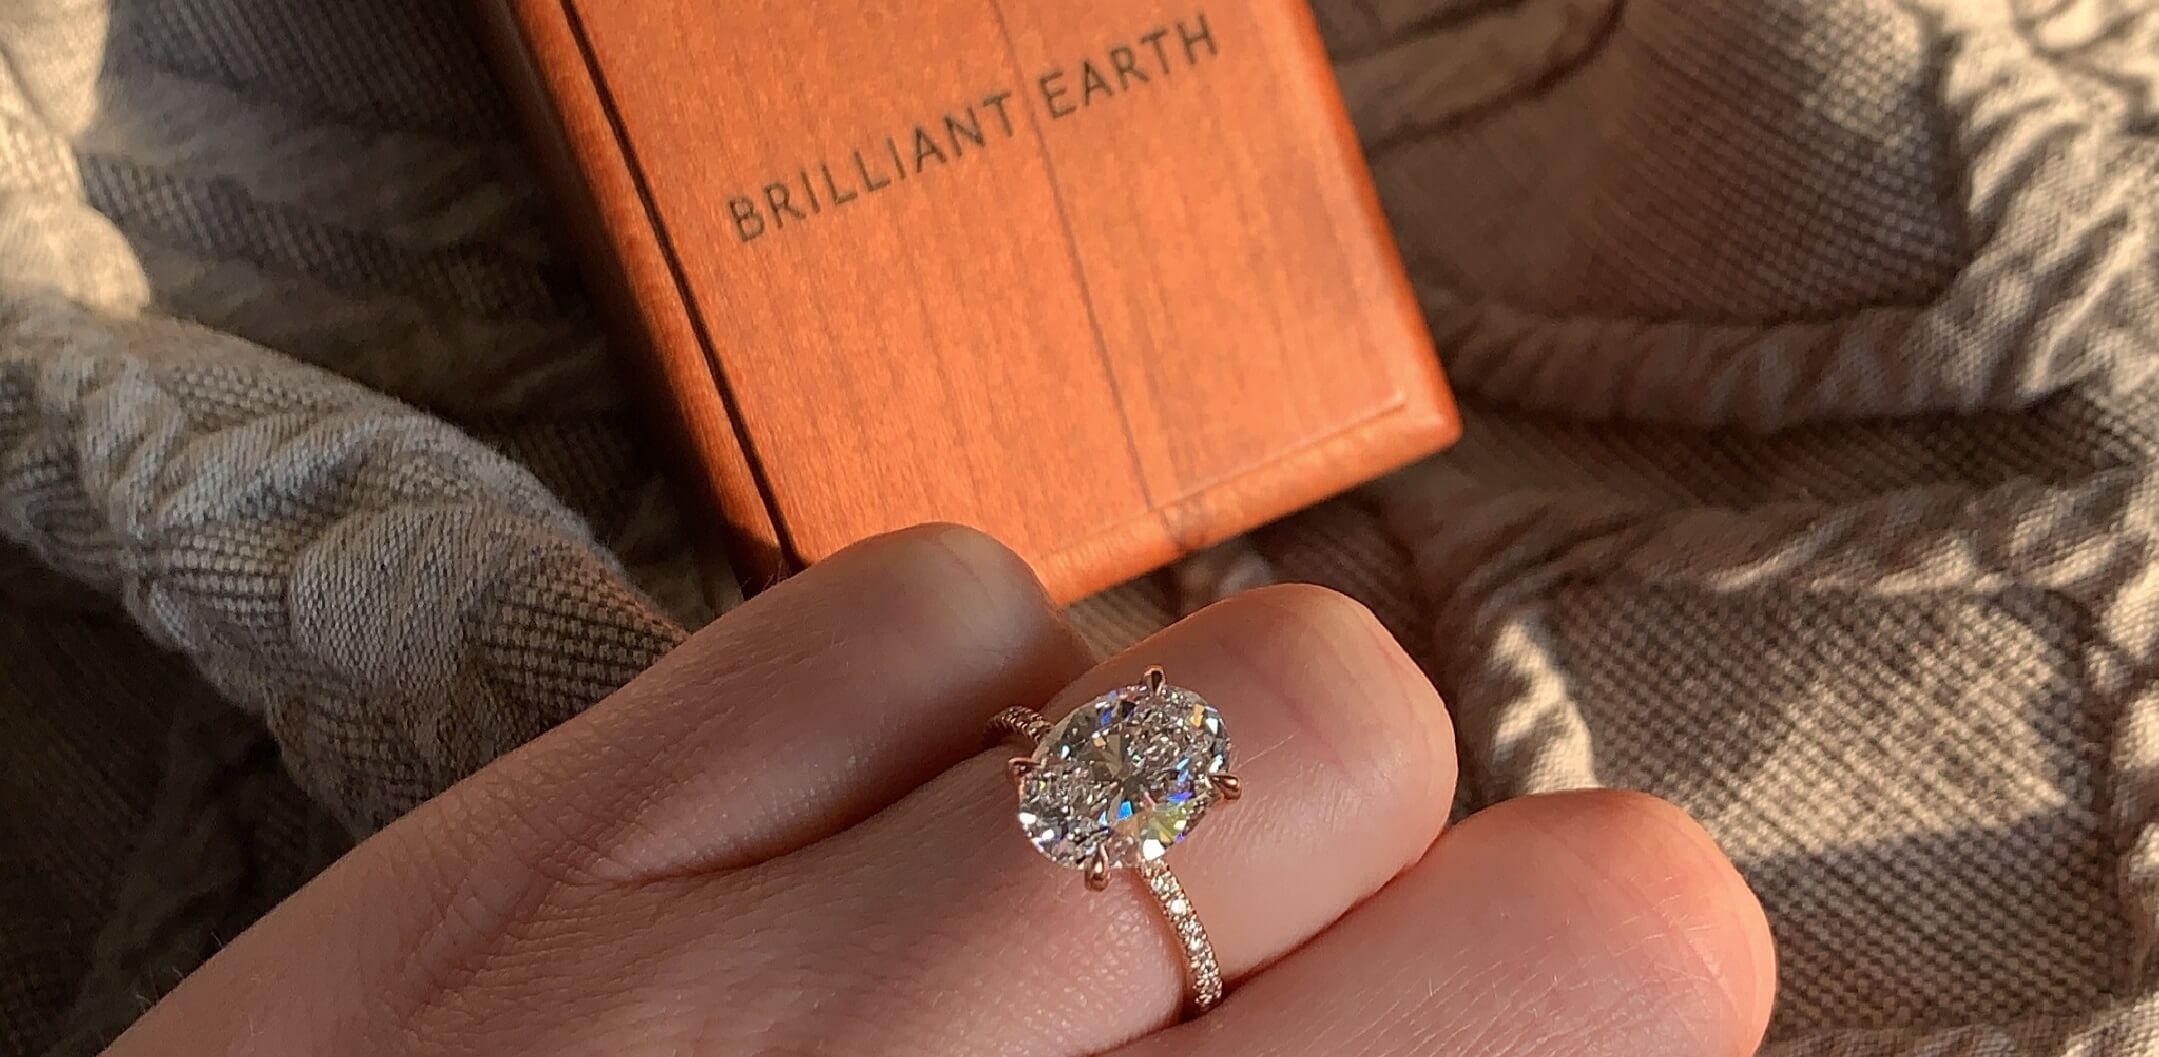 Brilliant Earth Diamond Ring